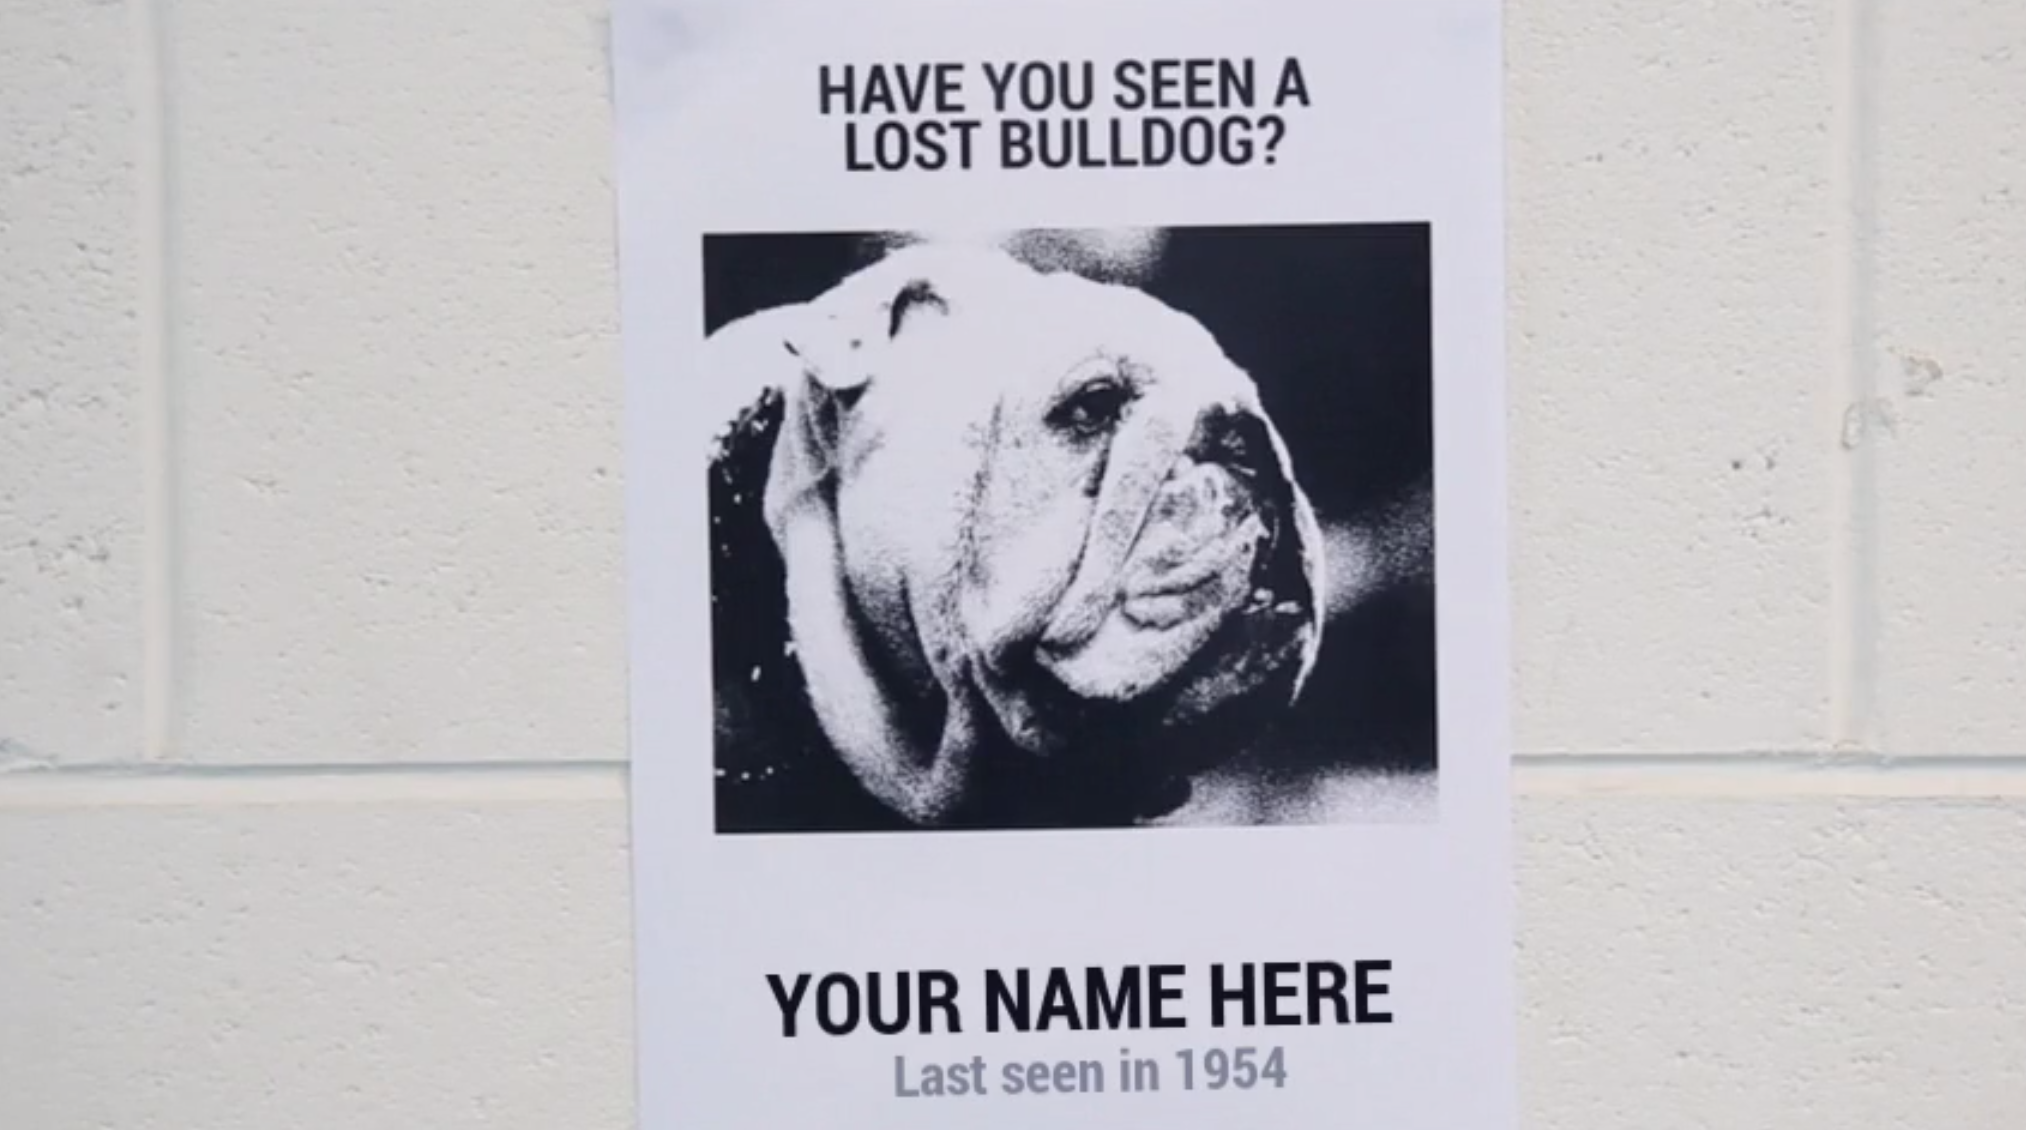 Are you a lost Bulldog?